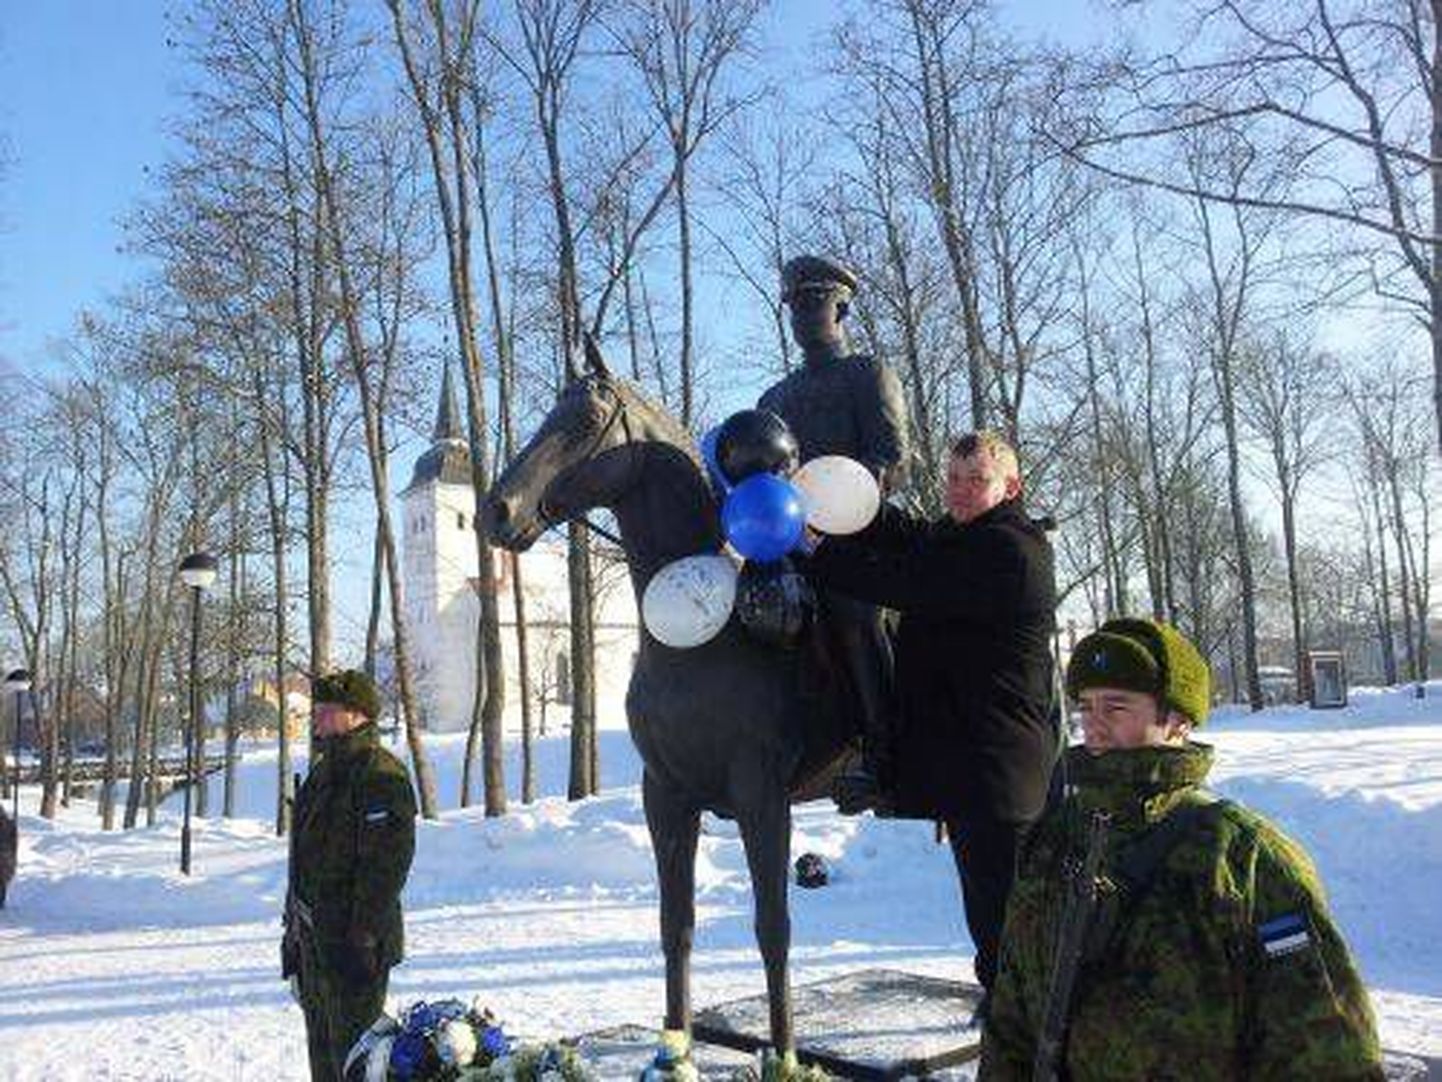 Kui tavaliselt viivad poliitikud tähtpäevadel monumentide jalamile pärgi, siis sedapuhku otsustas Viljandi maavanem Lembit Kruuse kindral Johan Laidoneri ratsamonumenti kaunistada rahvusvärvides õhupallidega.